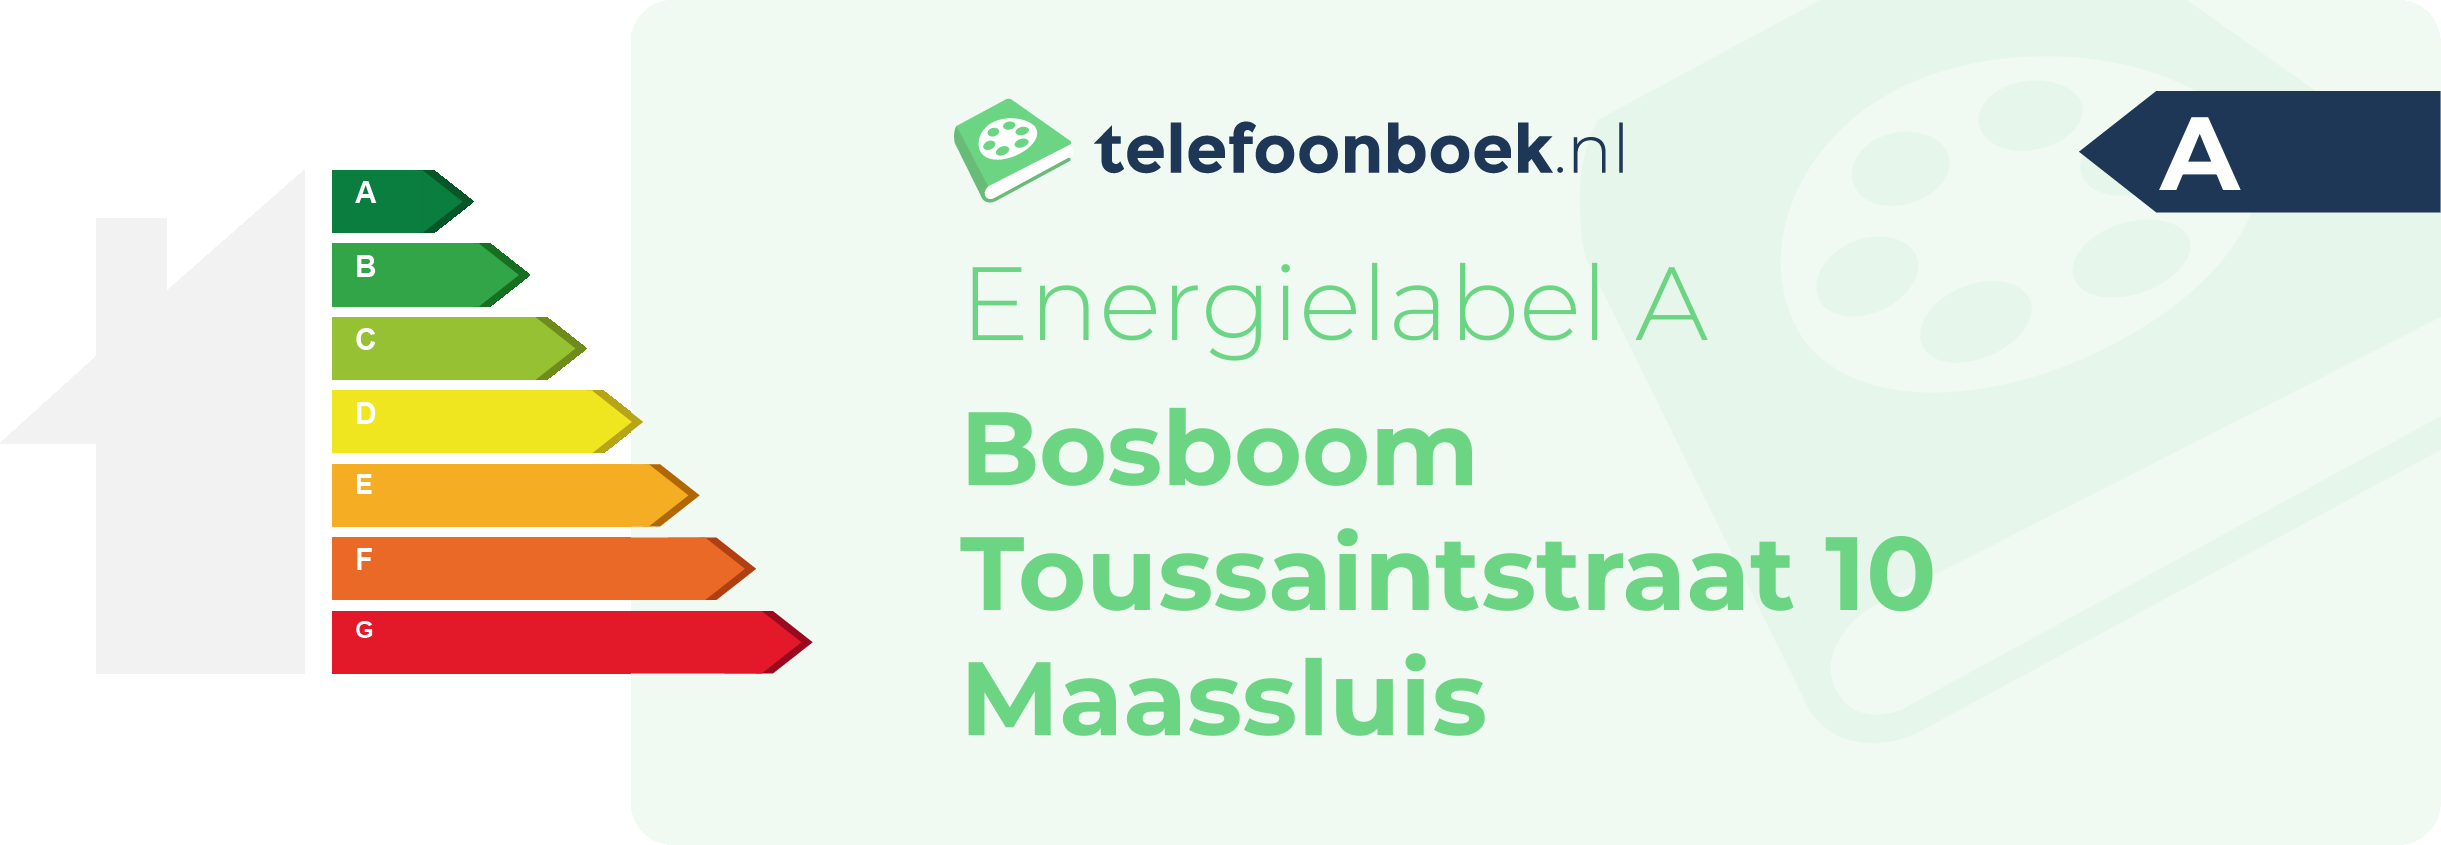 Energielabel Bosboom Toussaintstraat 10 Maassluis